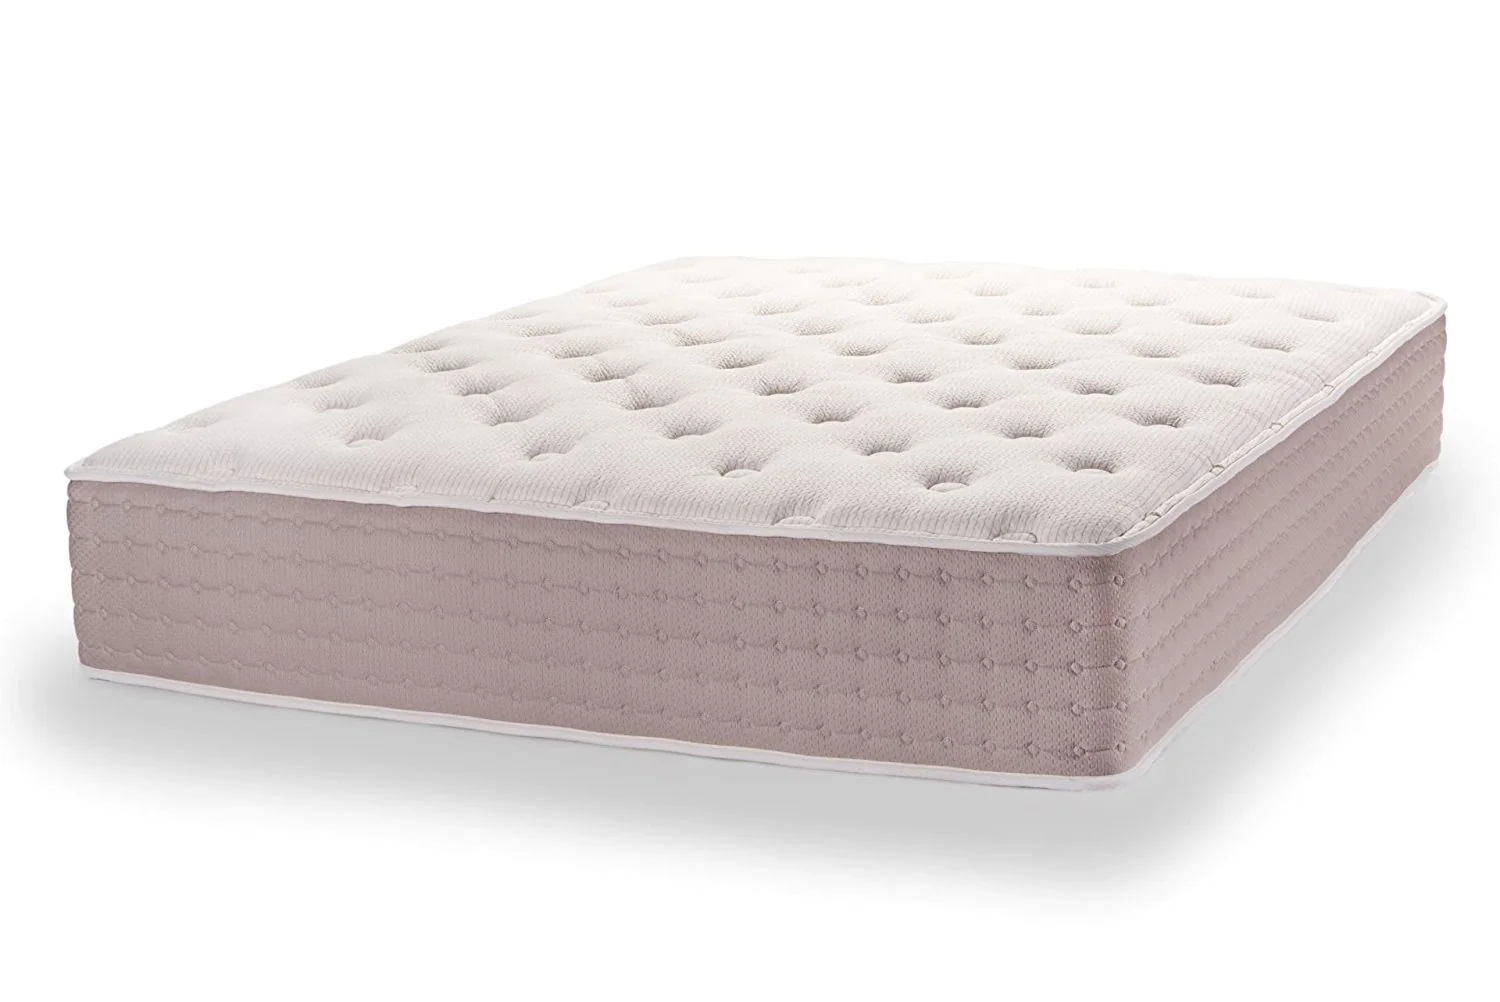 dunlop mattress 5 inch